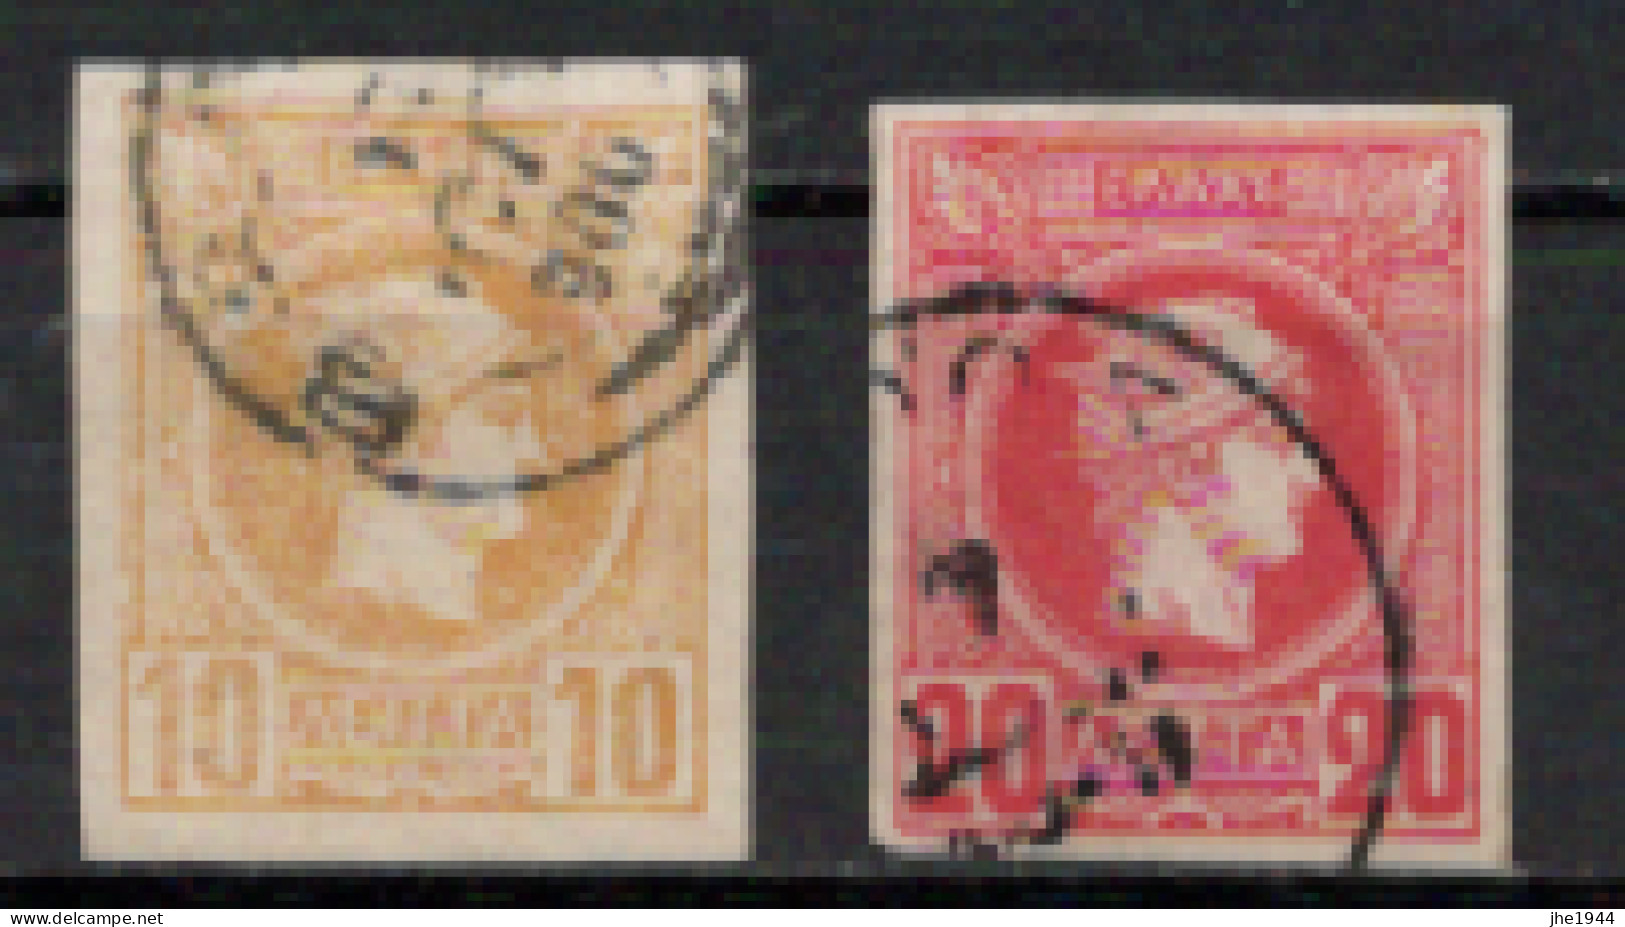 Grece N° 0058 Et 59 Ensemble 2 Valeurs (Voir Détail) - Used Stamps